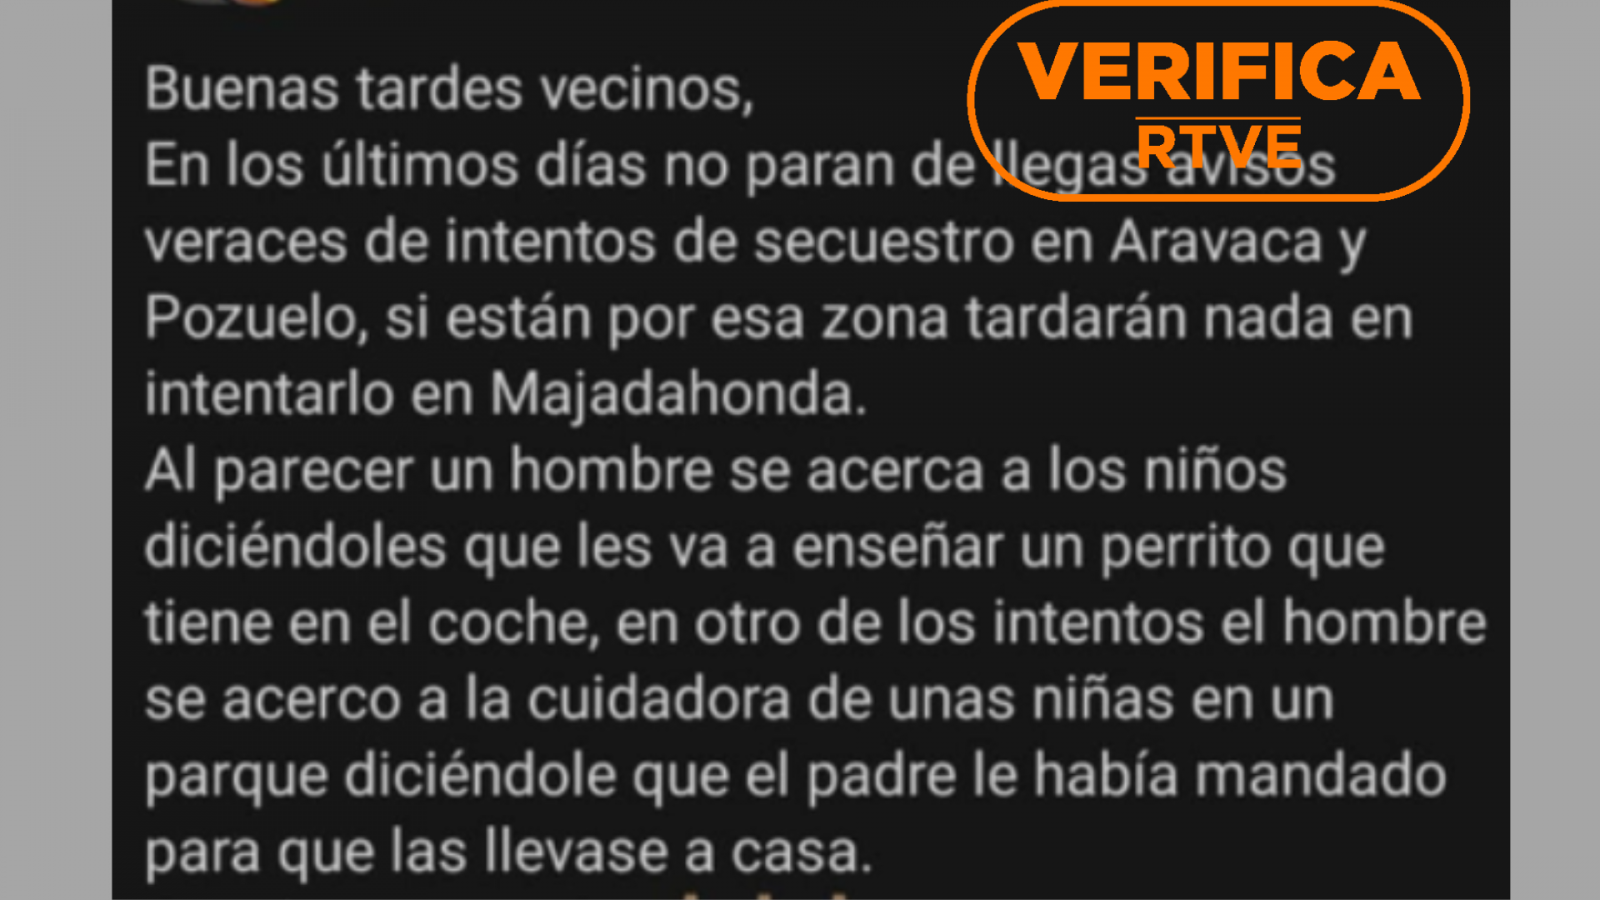 Un mensaje en redes que alerta sobre supuestos intentos de secuestro en Pozuelo y Aravaca, con el sello de VerificaRTVE en naranja.